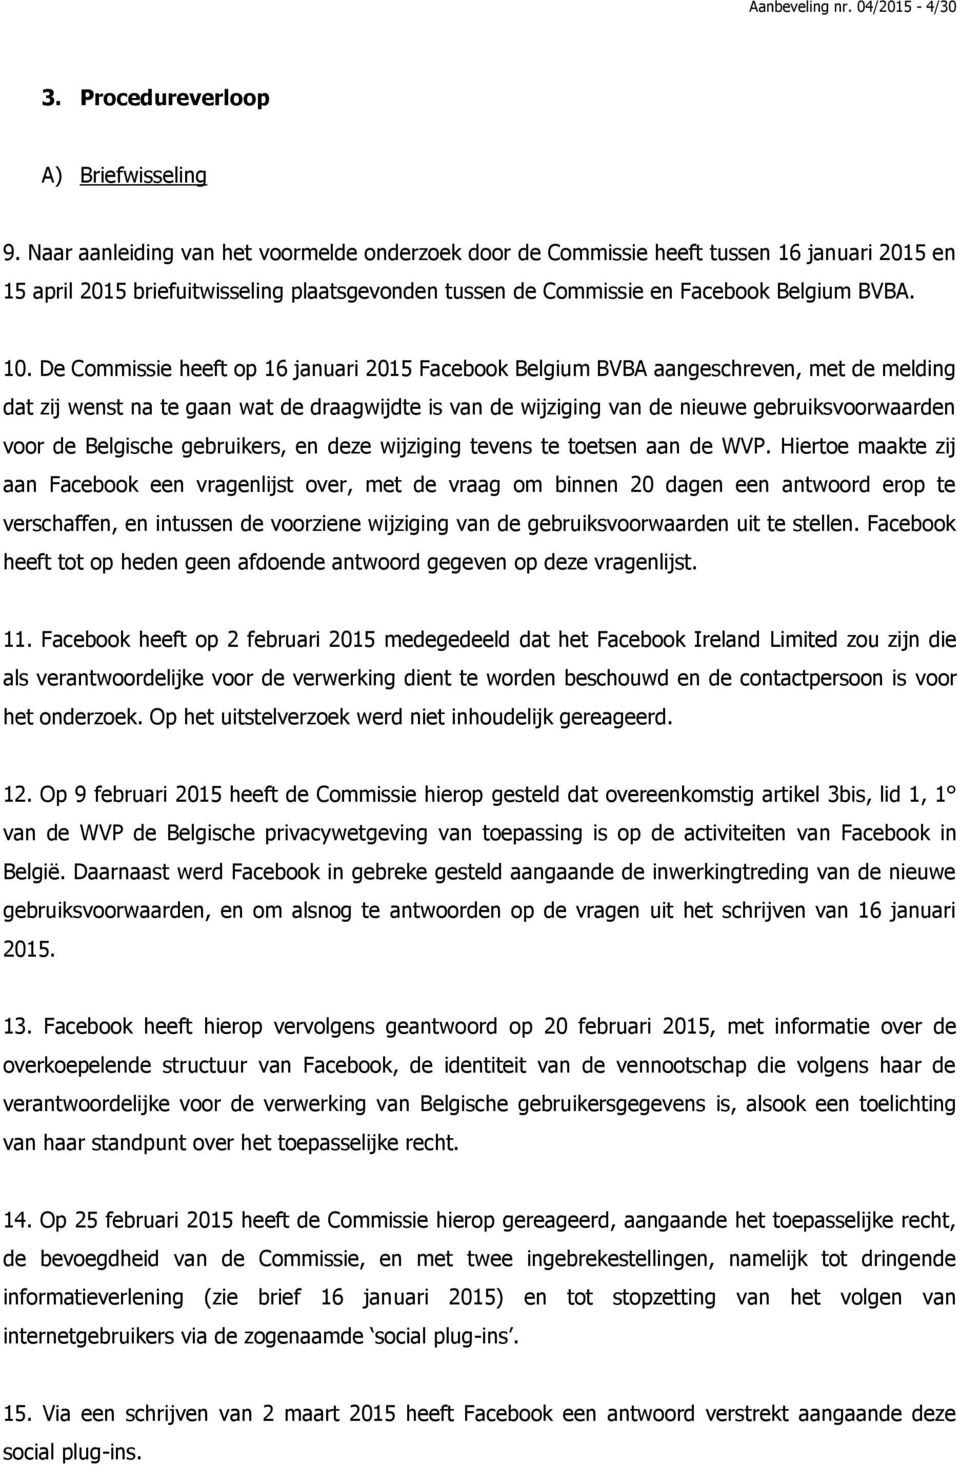 De Commissie heeft op 16 januari 2015 Facebook Belgium BVBA aangeschreven, met de melding dat zij wenst na te gaan wat de draagwijdte is van de wijziging van de nieuwe gebruiksvoorwaarden voor de